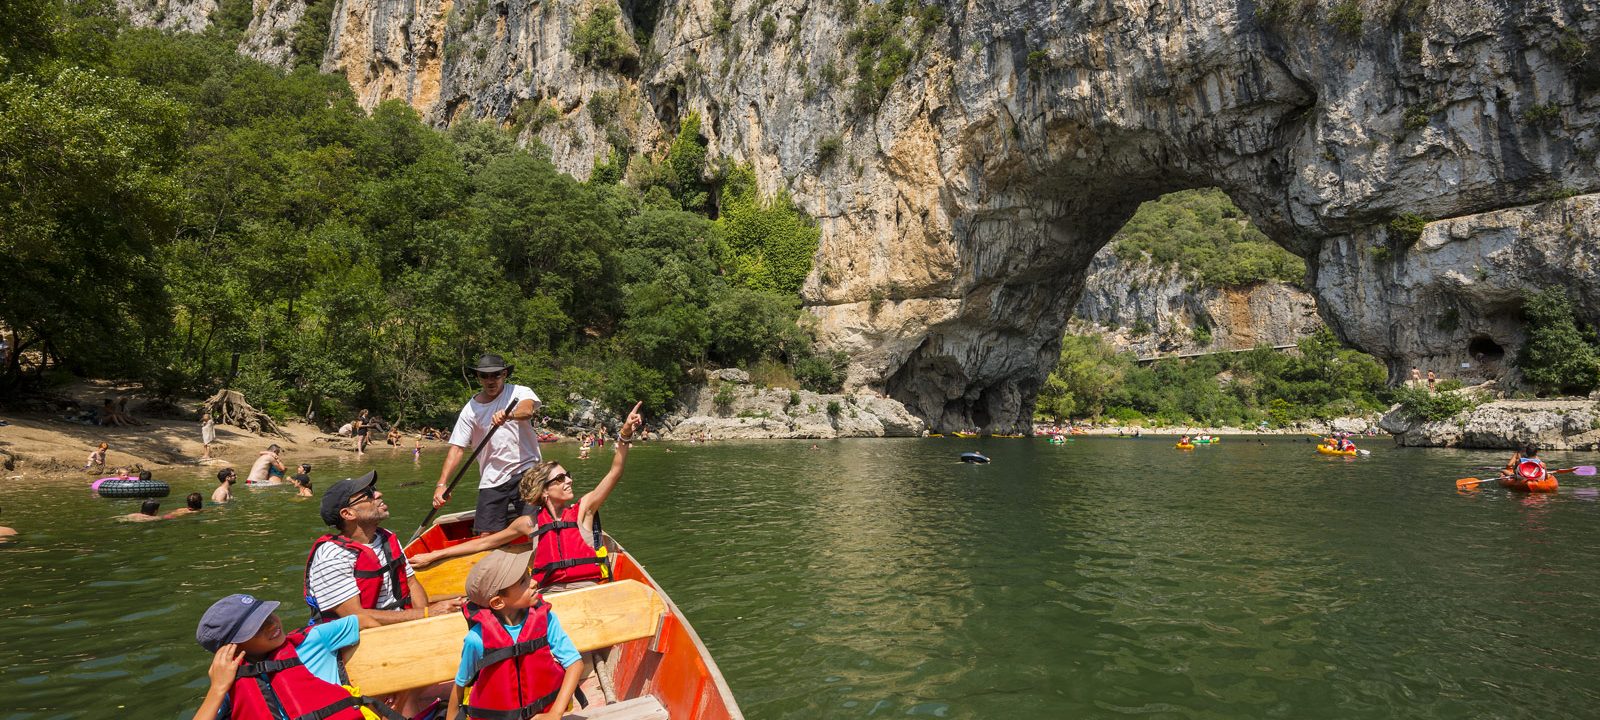 Take a boat trip down the Gorges de l'Ardèche